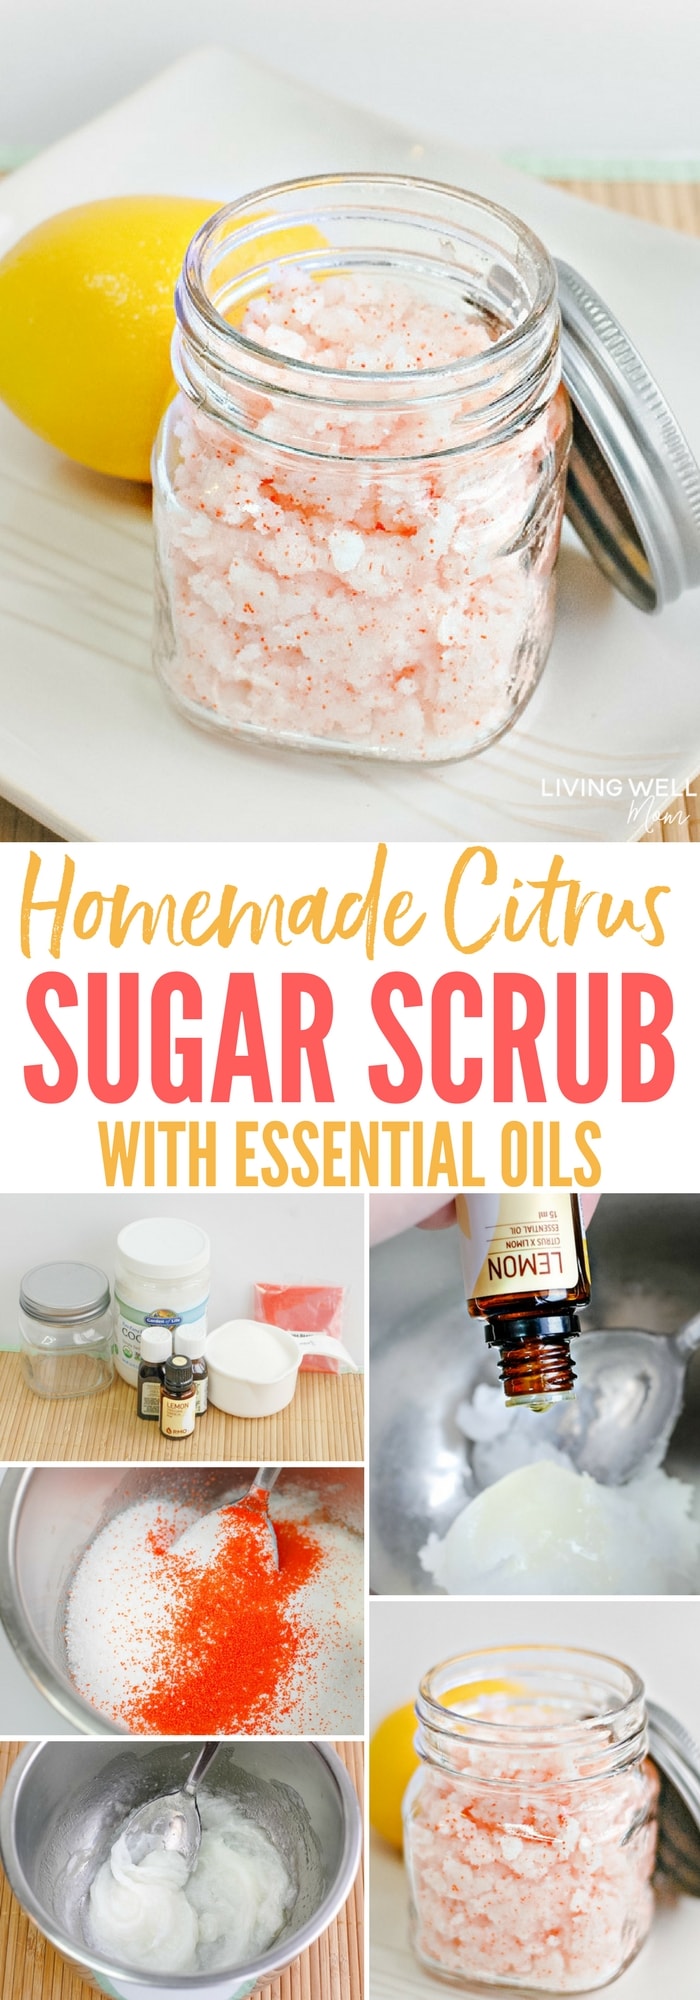 Homemade Citrus Sugar Scrub with essential oils recipe